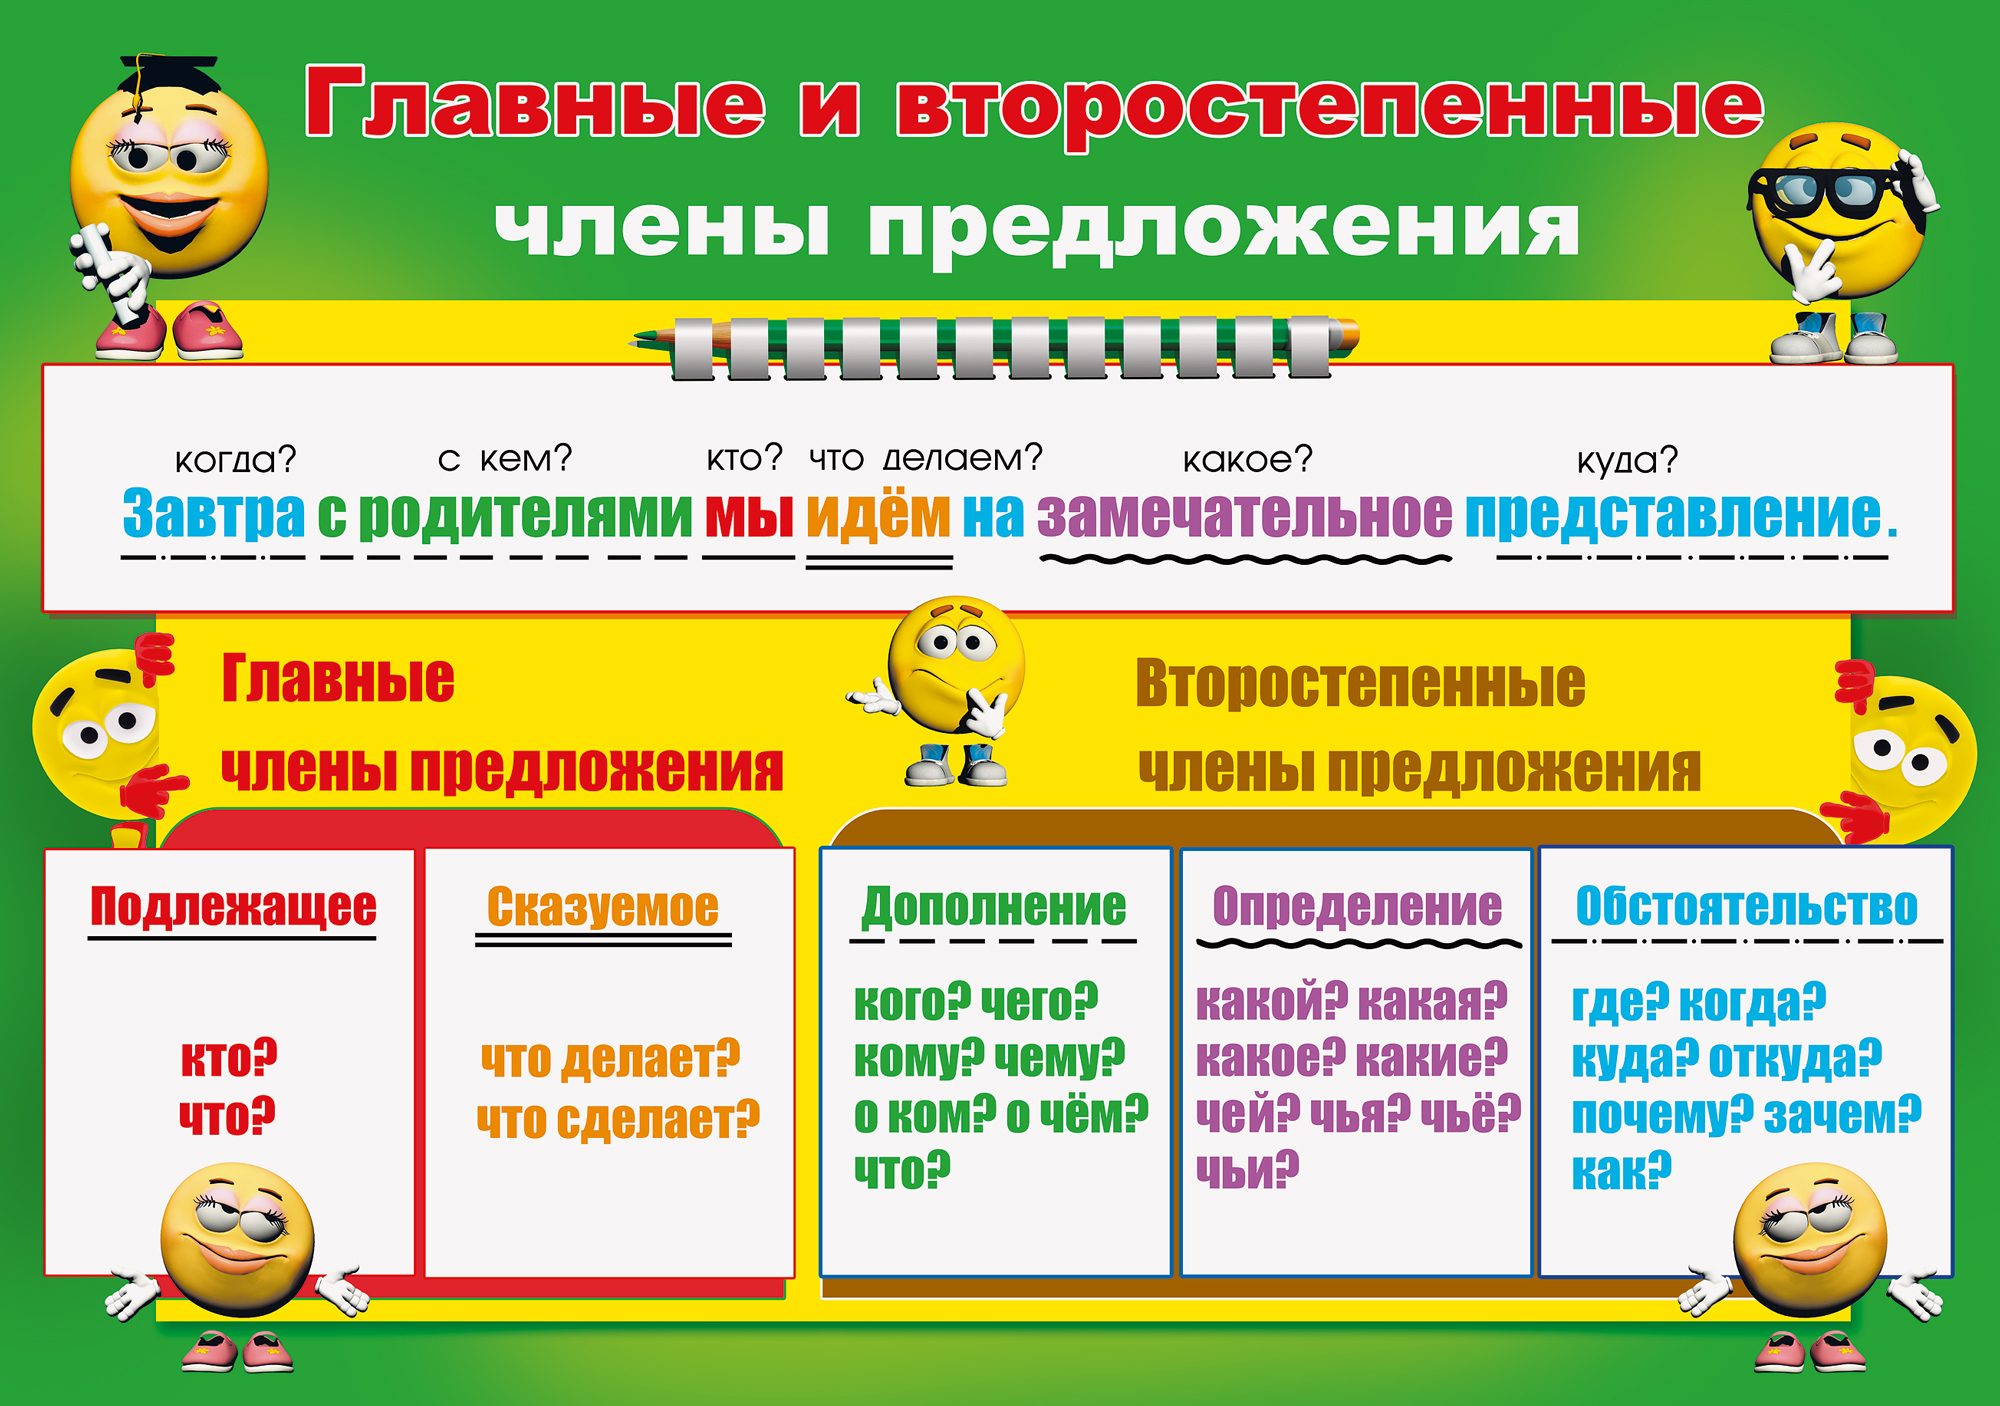 члены сказа в белорусском языке фото 74